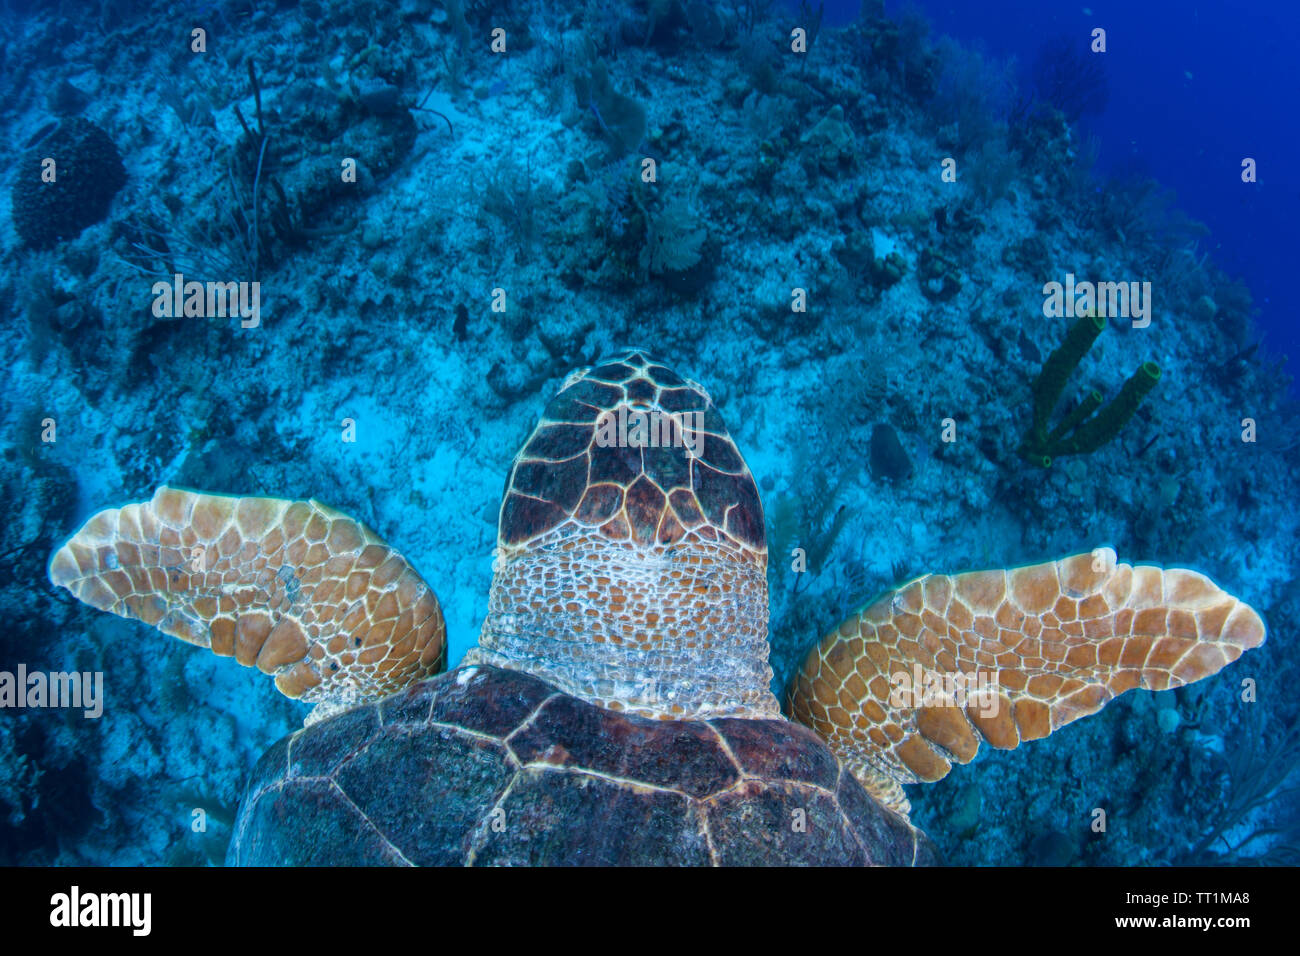 Una tortuga marina nadando en las aguas azules del Mar Caribe frente a las costas de Belice. Esta área es parte de la Barrera Arrecifal Mesoamericana. Foto de stock